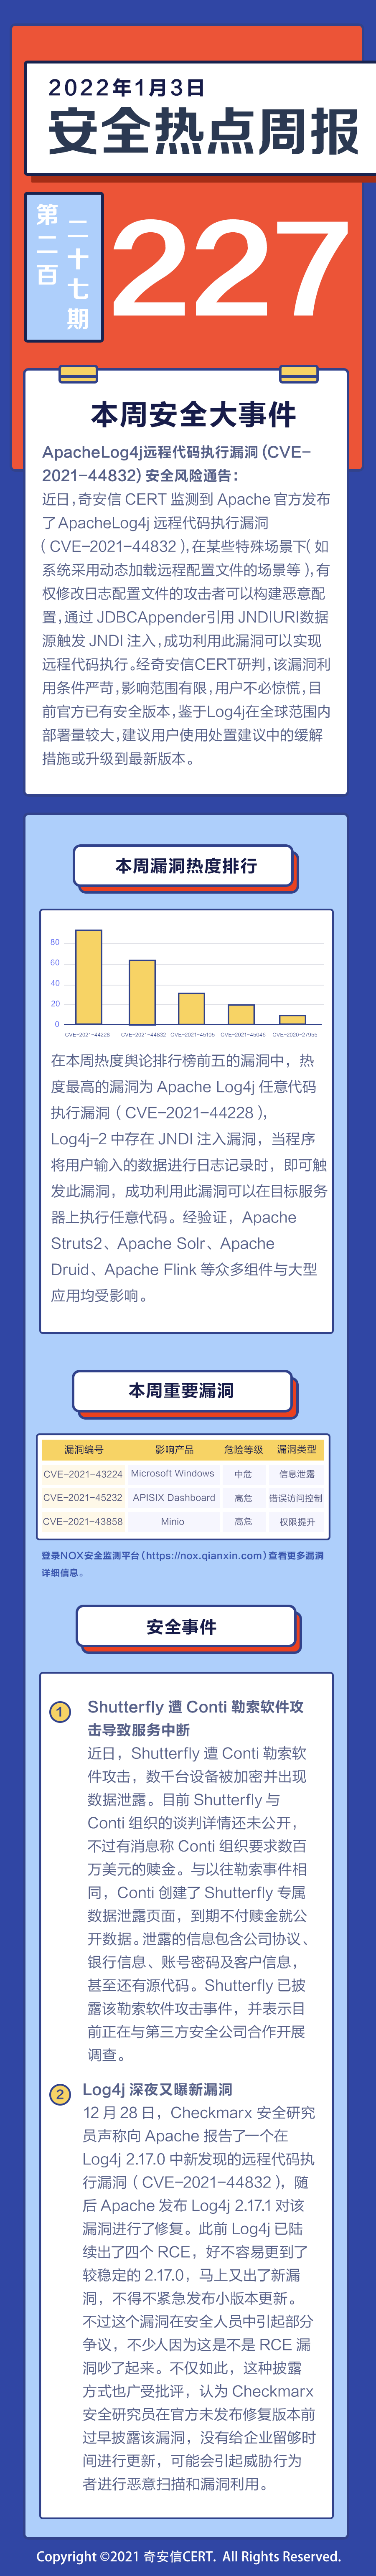 【安全热点周报】第227期:CVE-2021-44832 Apache Log4j 远程代码执行漏洞利用条件严苛，影响范围有限